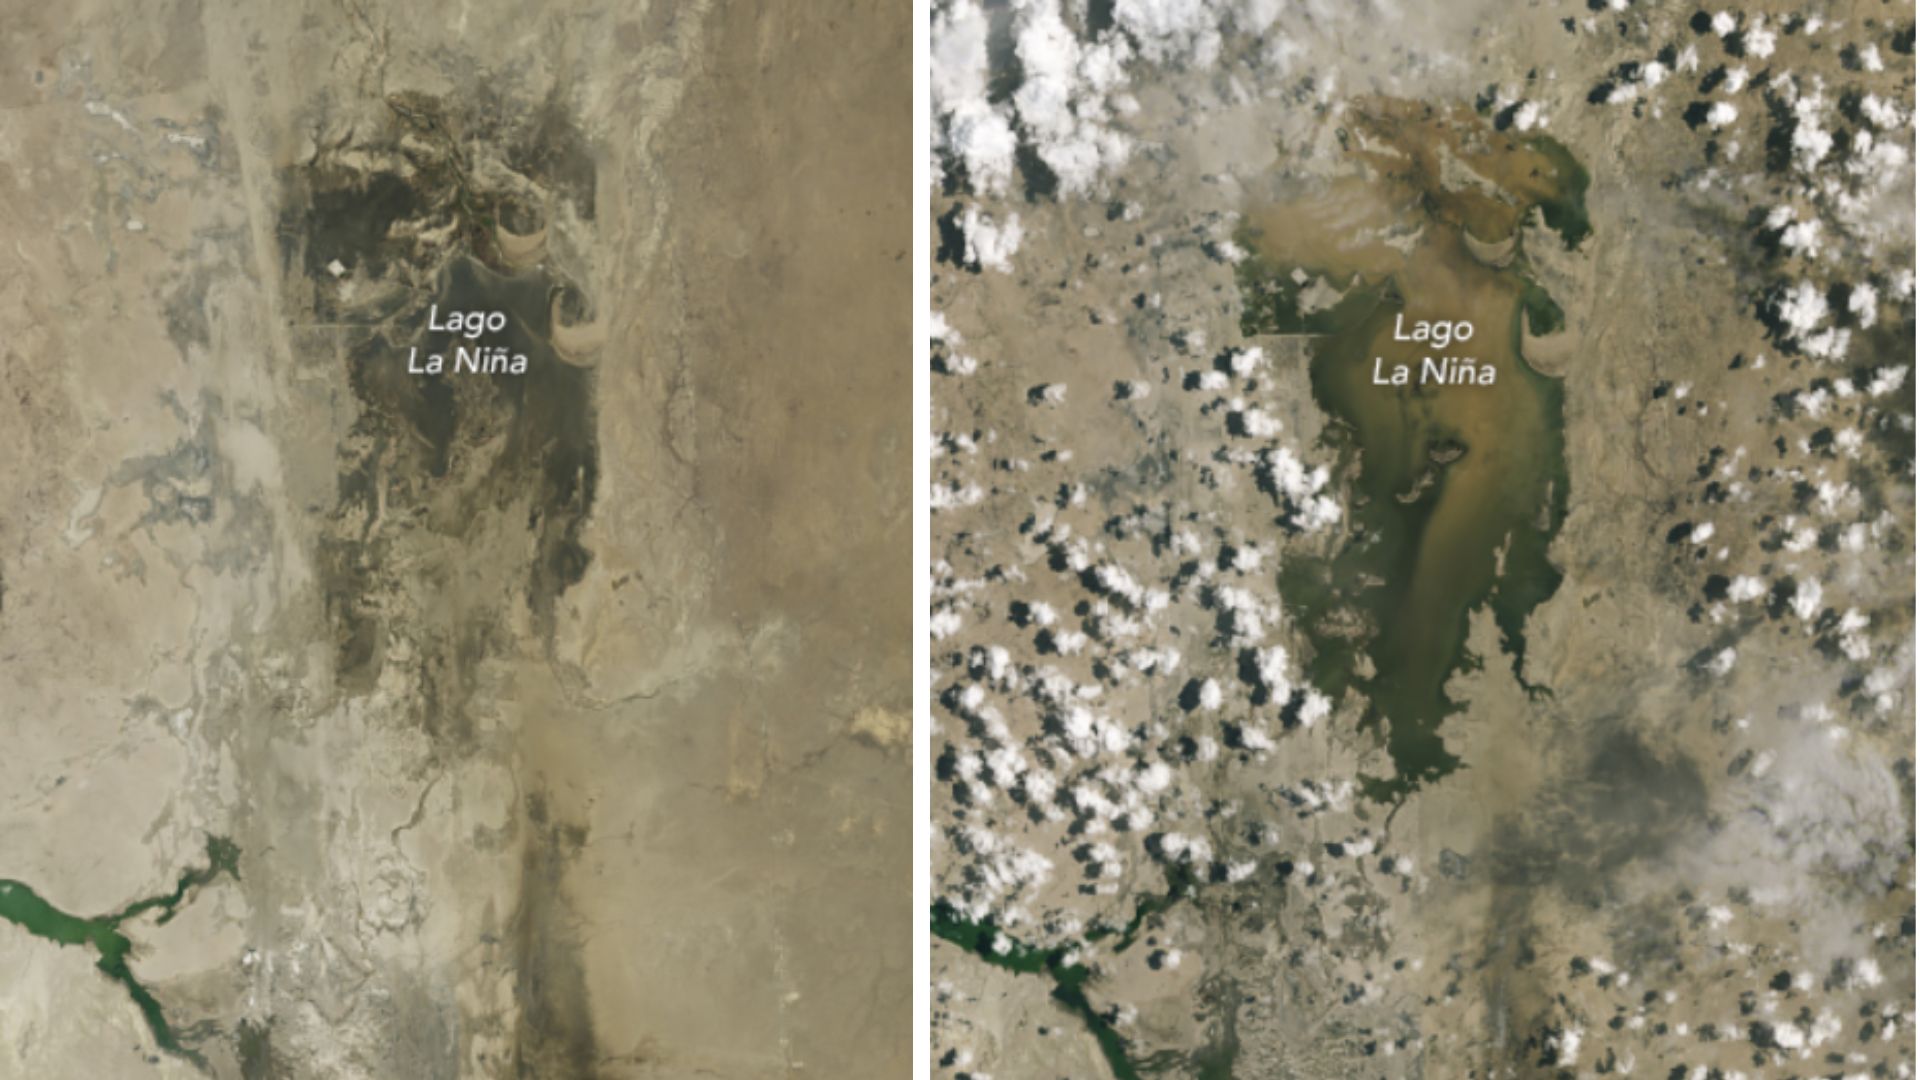 Imágenes de la NASA, registradas el 24 de febrero y el 12 de marzo, muestran agua adicional que se acumuló en el lago La Niña, una laguna efímera que se llena cuando las lluvias son inusualmente intensas y los ríos cercanos Piura y La Leche se desbordan. (NASA)